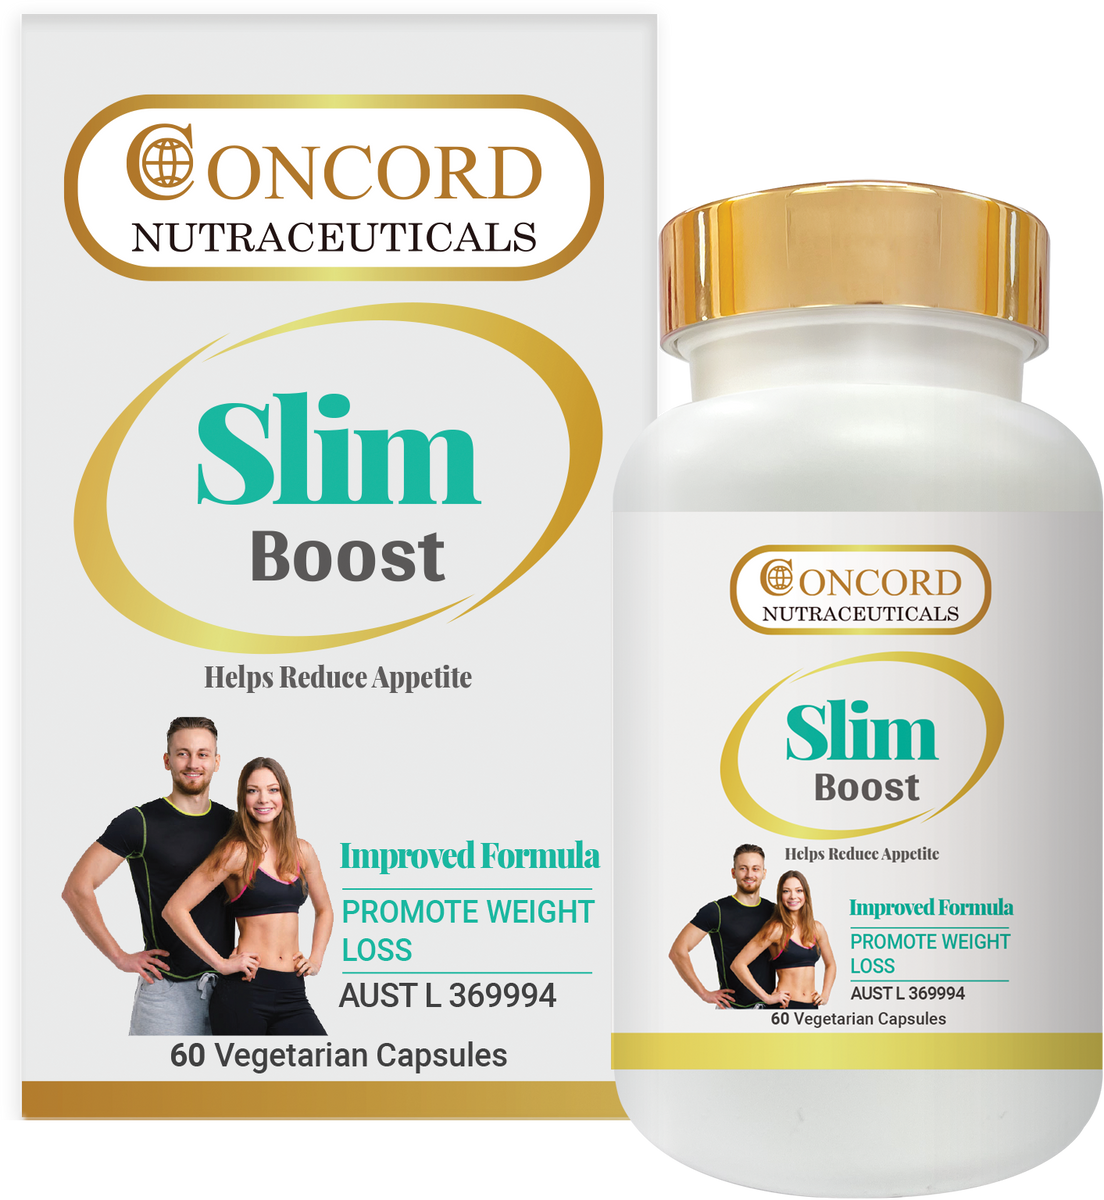 Slim Boost – ConcordNutraceuticals